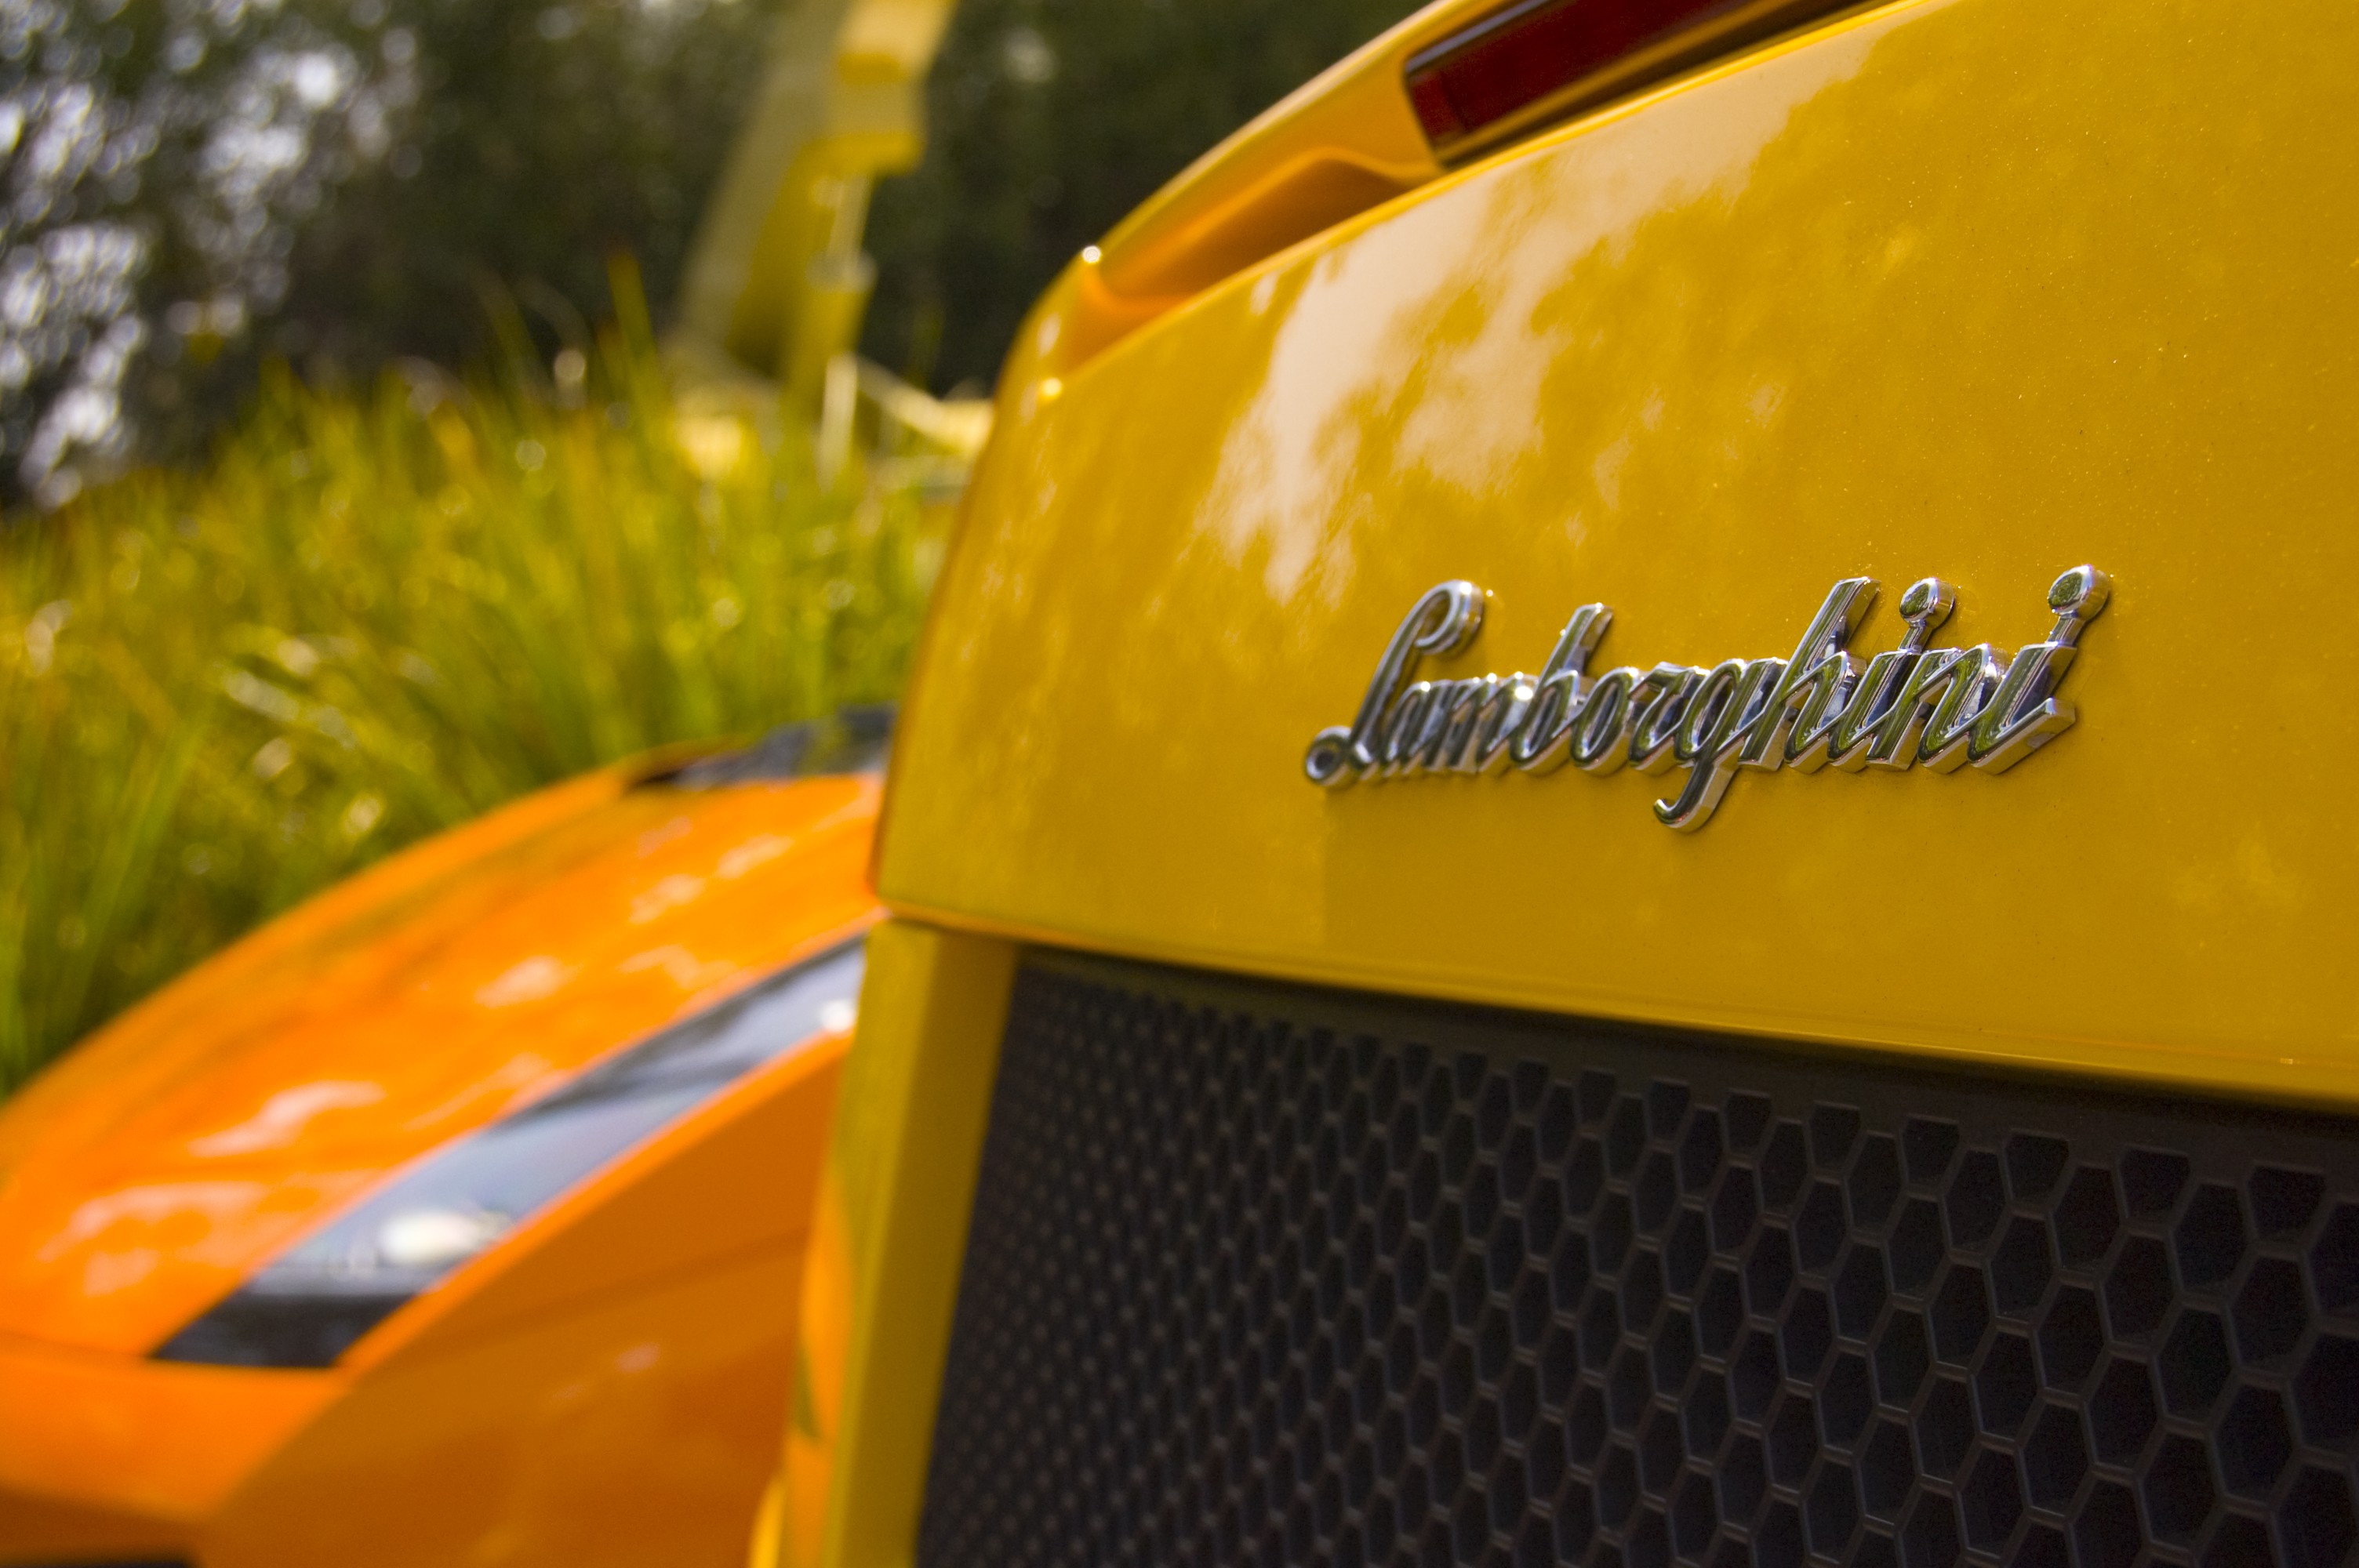 Lamborghini, Lamborghini Gallardo, Car Wallpaper